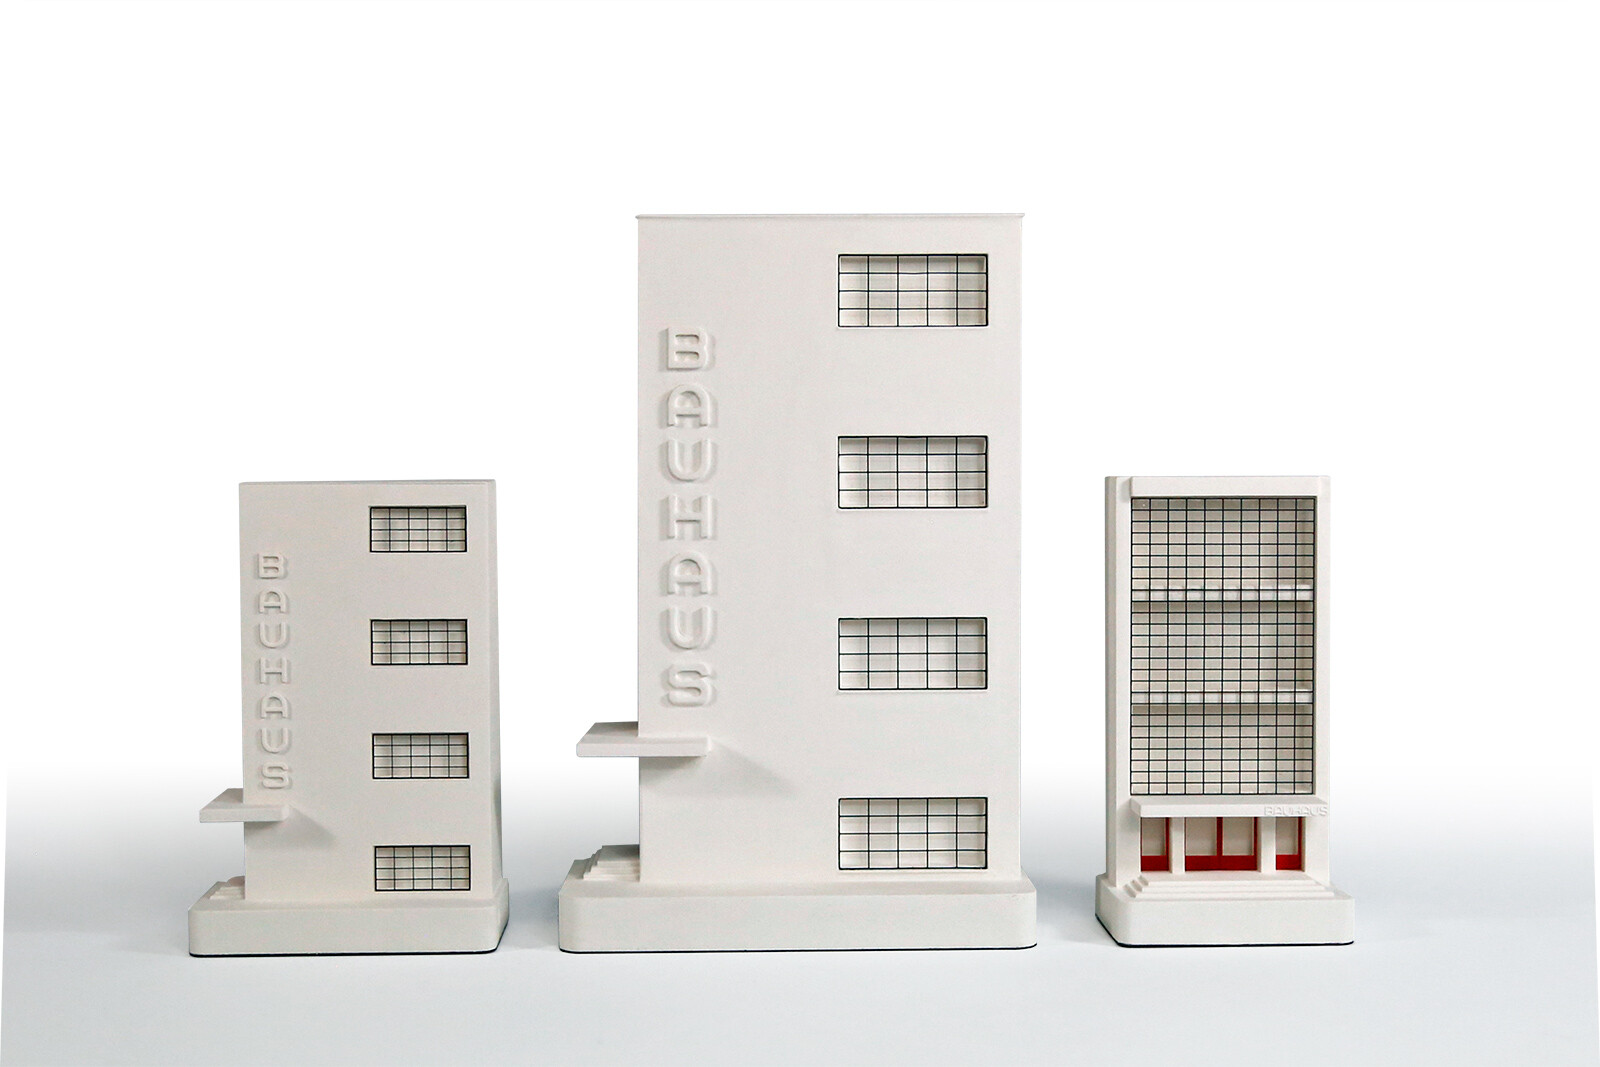 Bauhaus Dessau Entrance - Chisel & Mouse